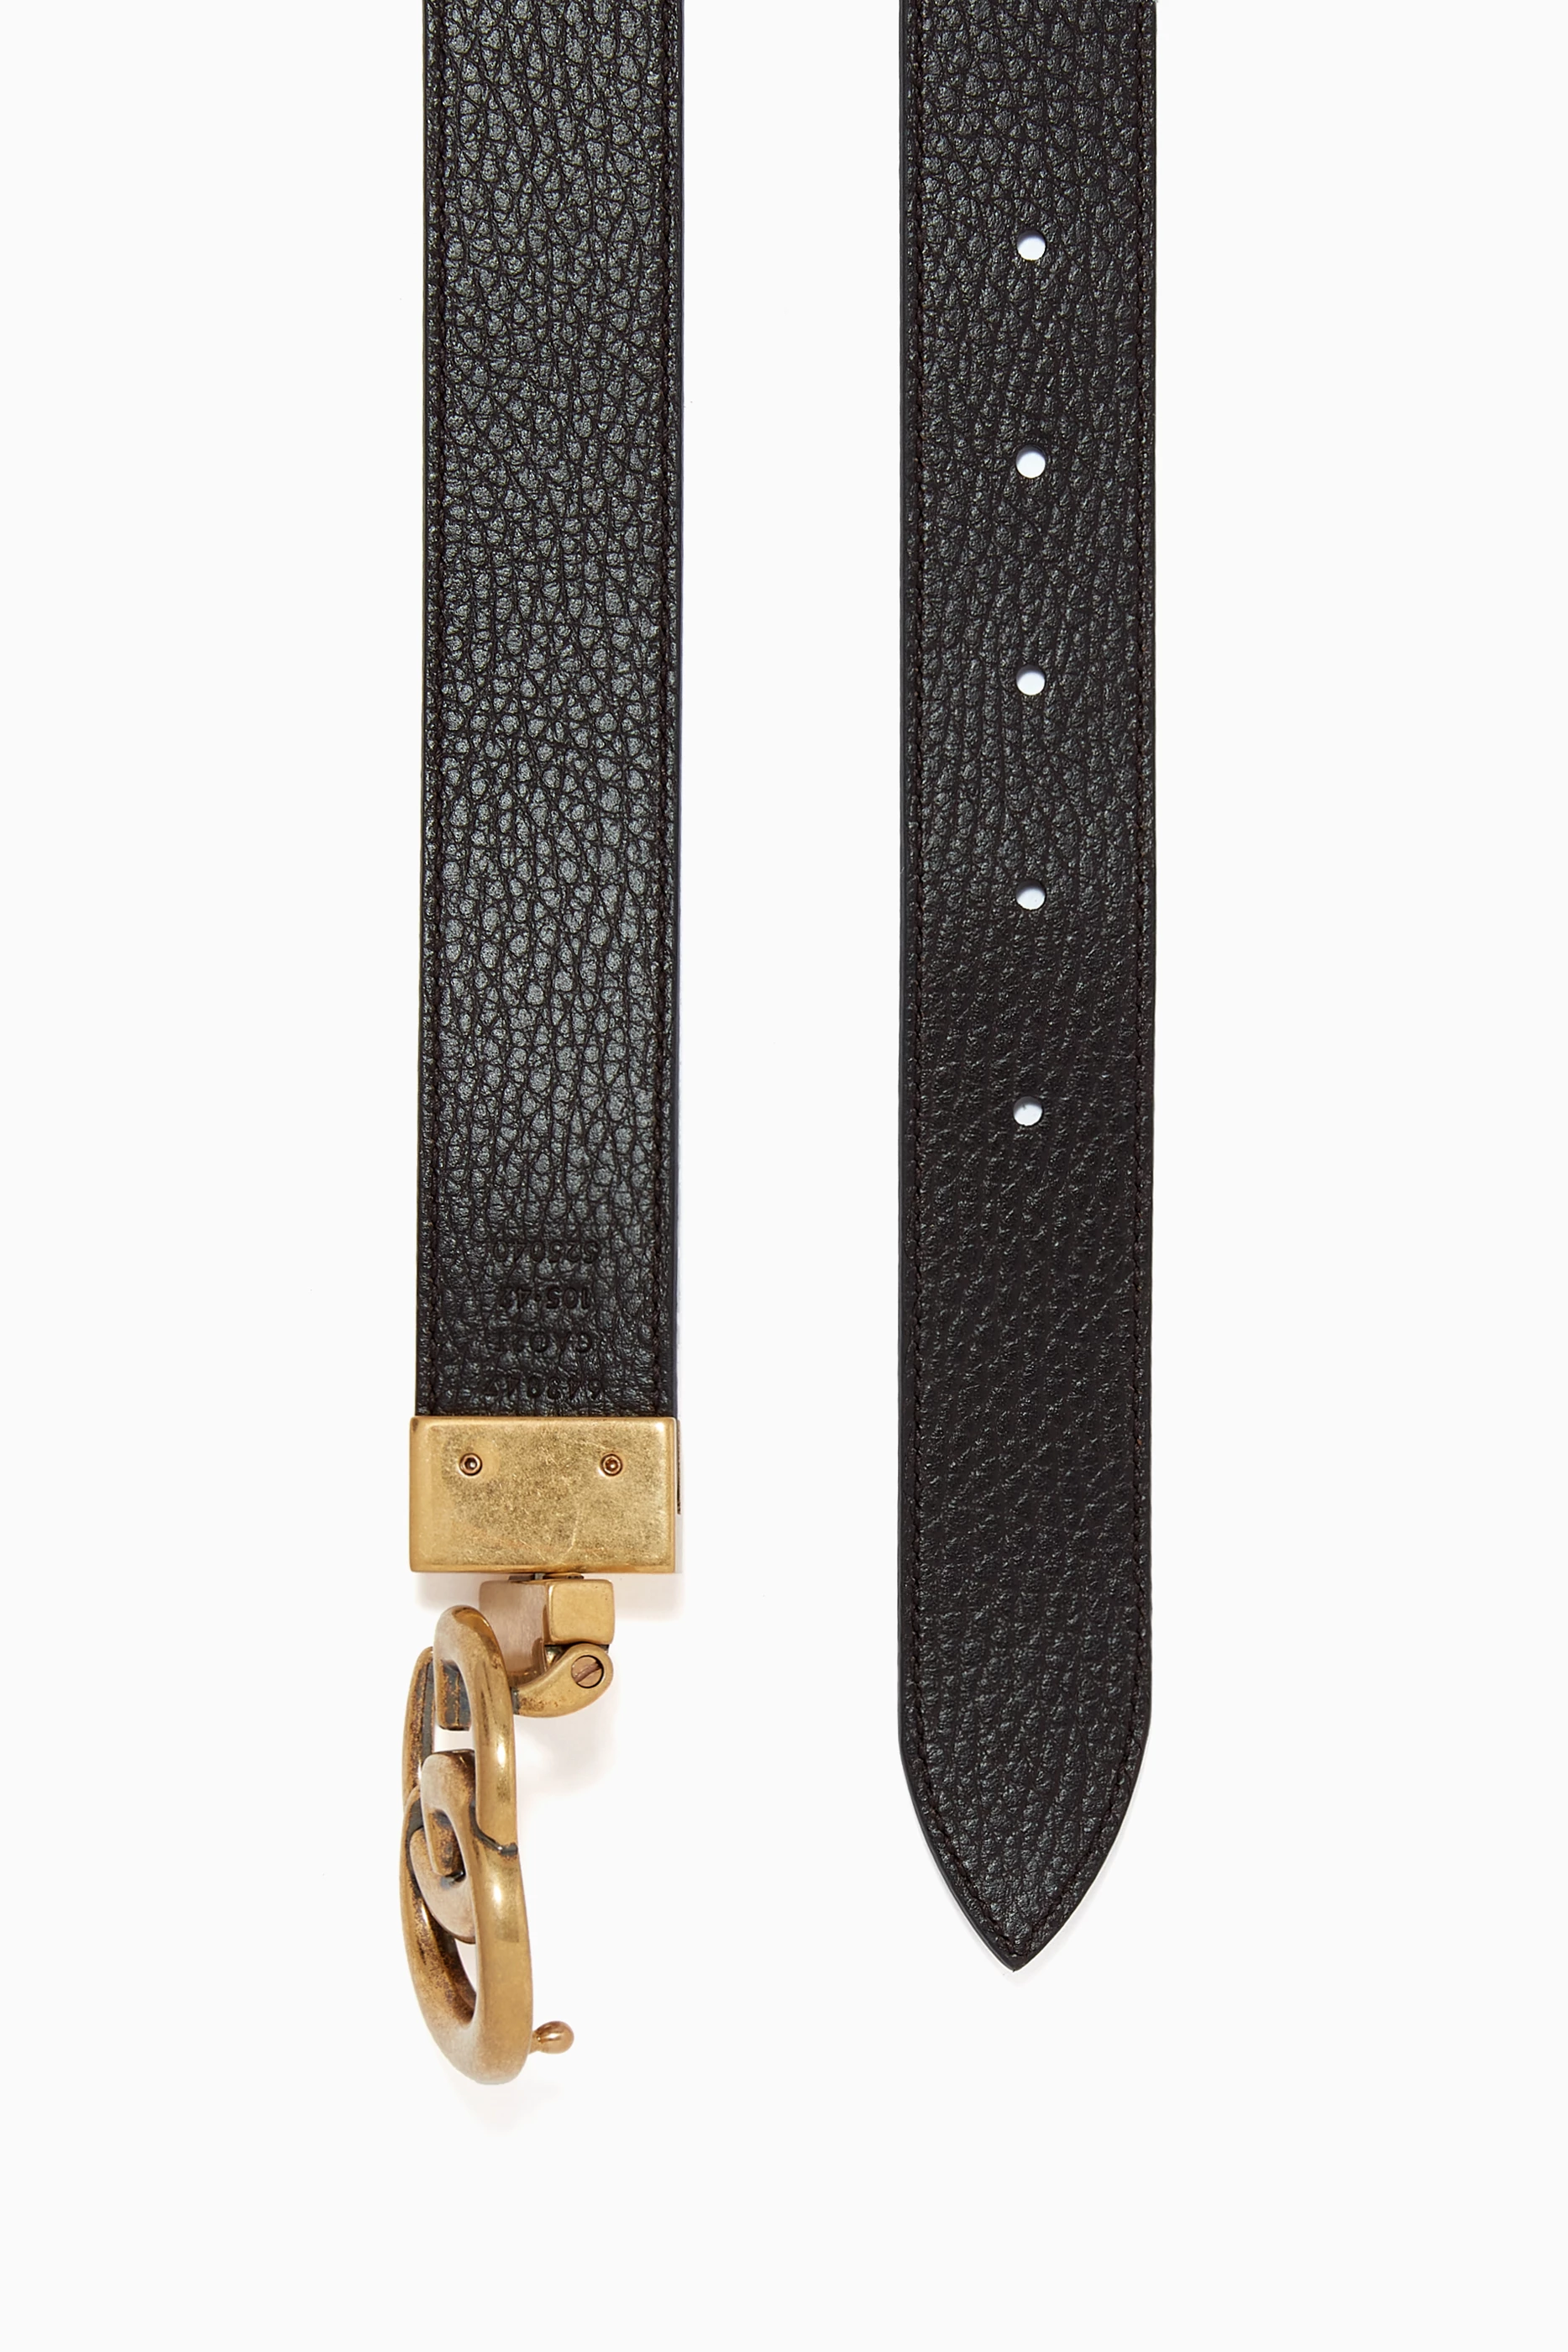 Với thiết kế đặc biệt có thể đảo ngược, Gucci Black Double G Buckle Reversible Belt không chỉ mang đến sự tiện lợi mà còn thể hiện phong cách thời trang đầy cá tính. Hãy xem hình ảnh liên quan để chiêm ngưỡng sự hoàn thiện và tinh tế của sản phẩm.